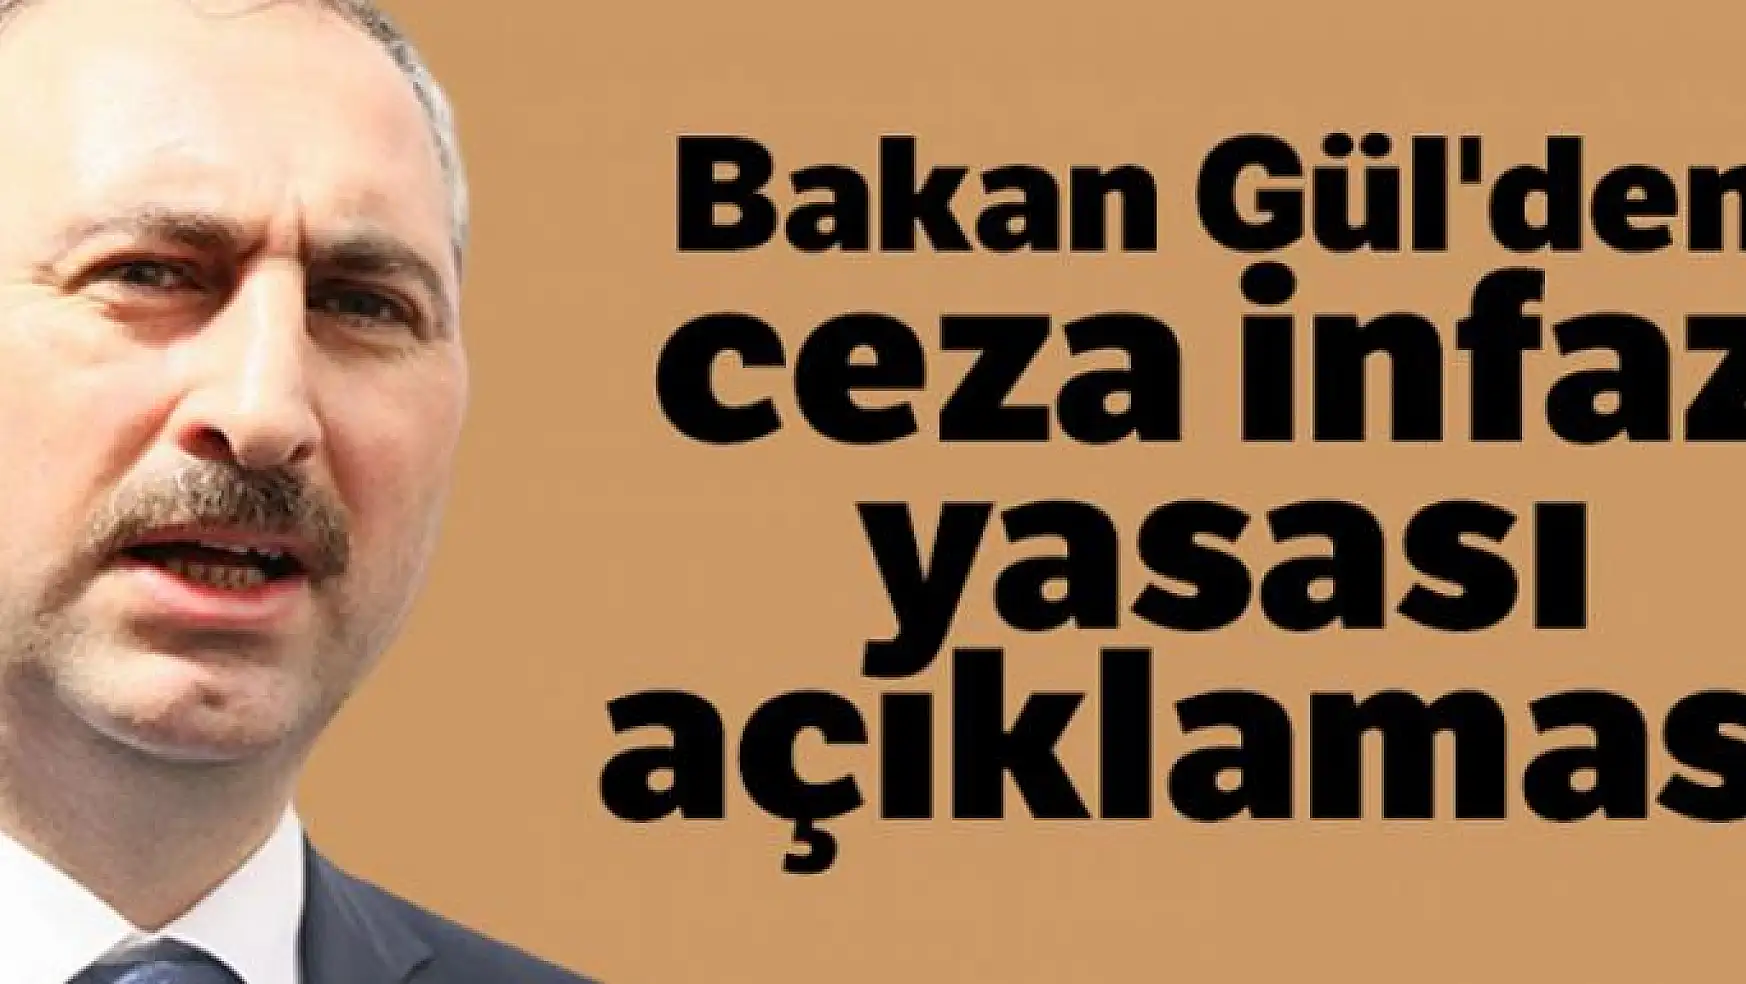 Bakan Gül'den ceza infaz yasası açıklaması